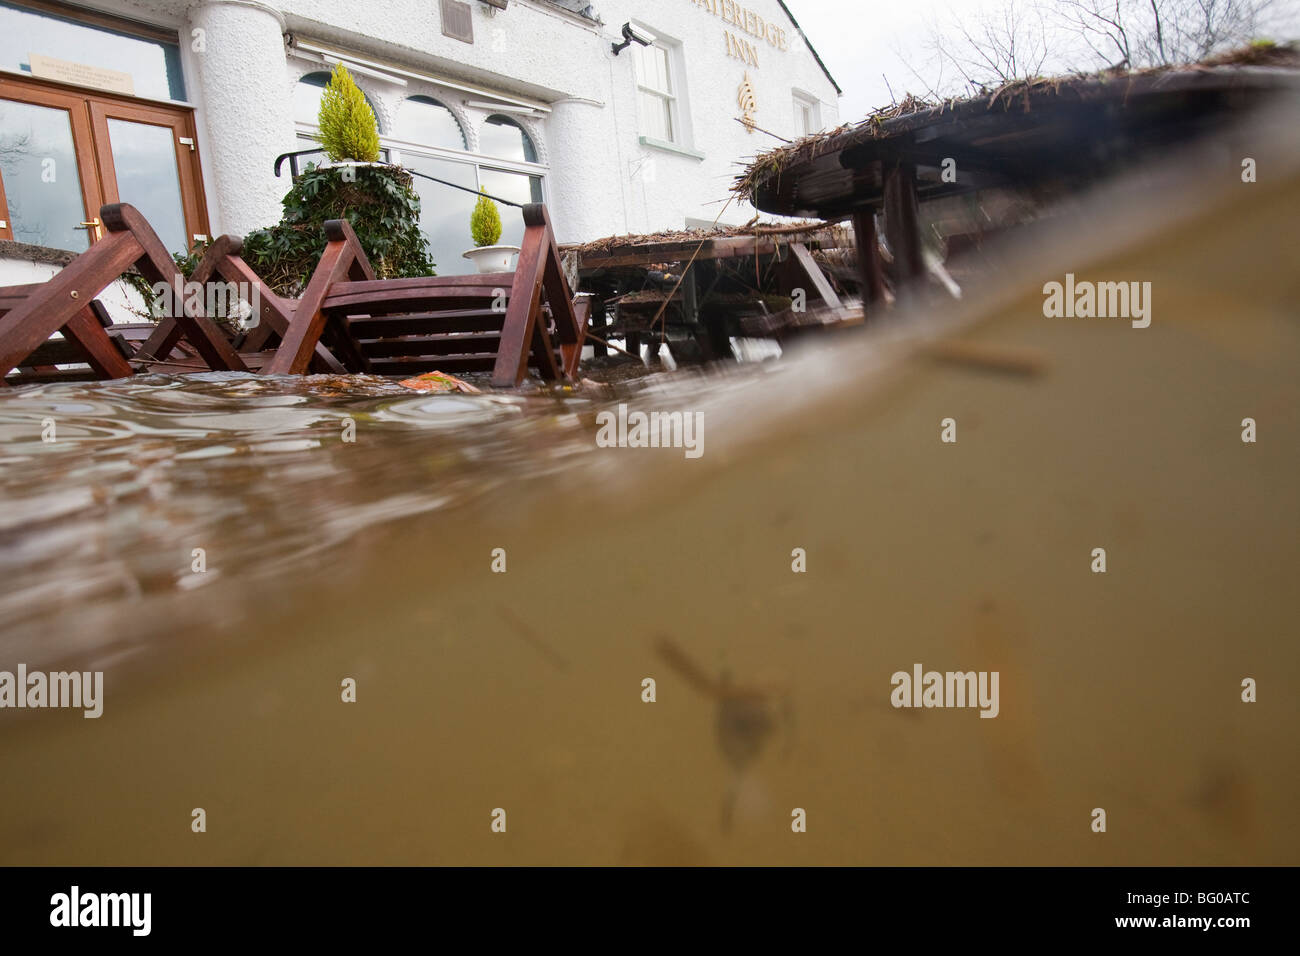 Das Wasser Kante Hotel in Ambleside, beschädigt durch die verheerenden Überschwemmungen in November 2009, in Cumbria, UK. Stockfoto